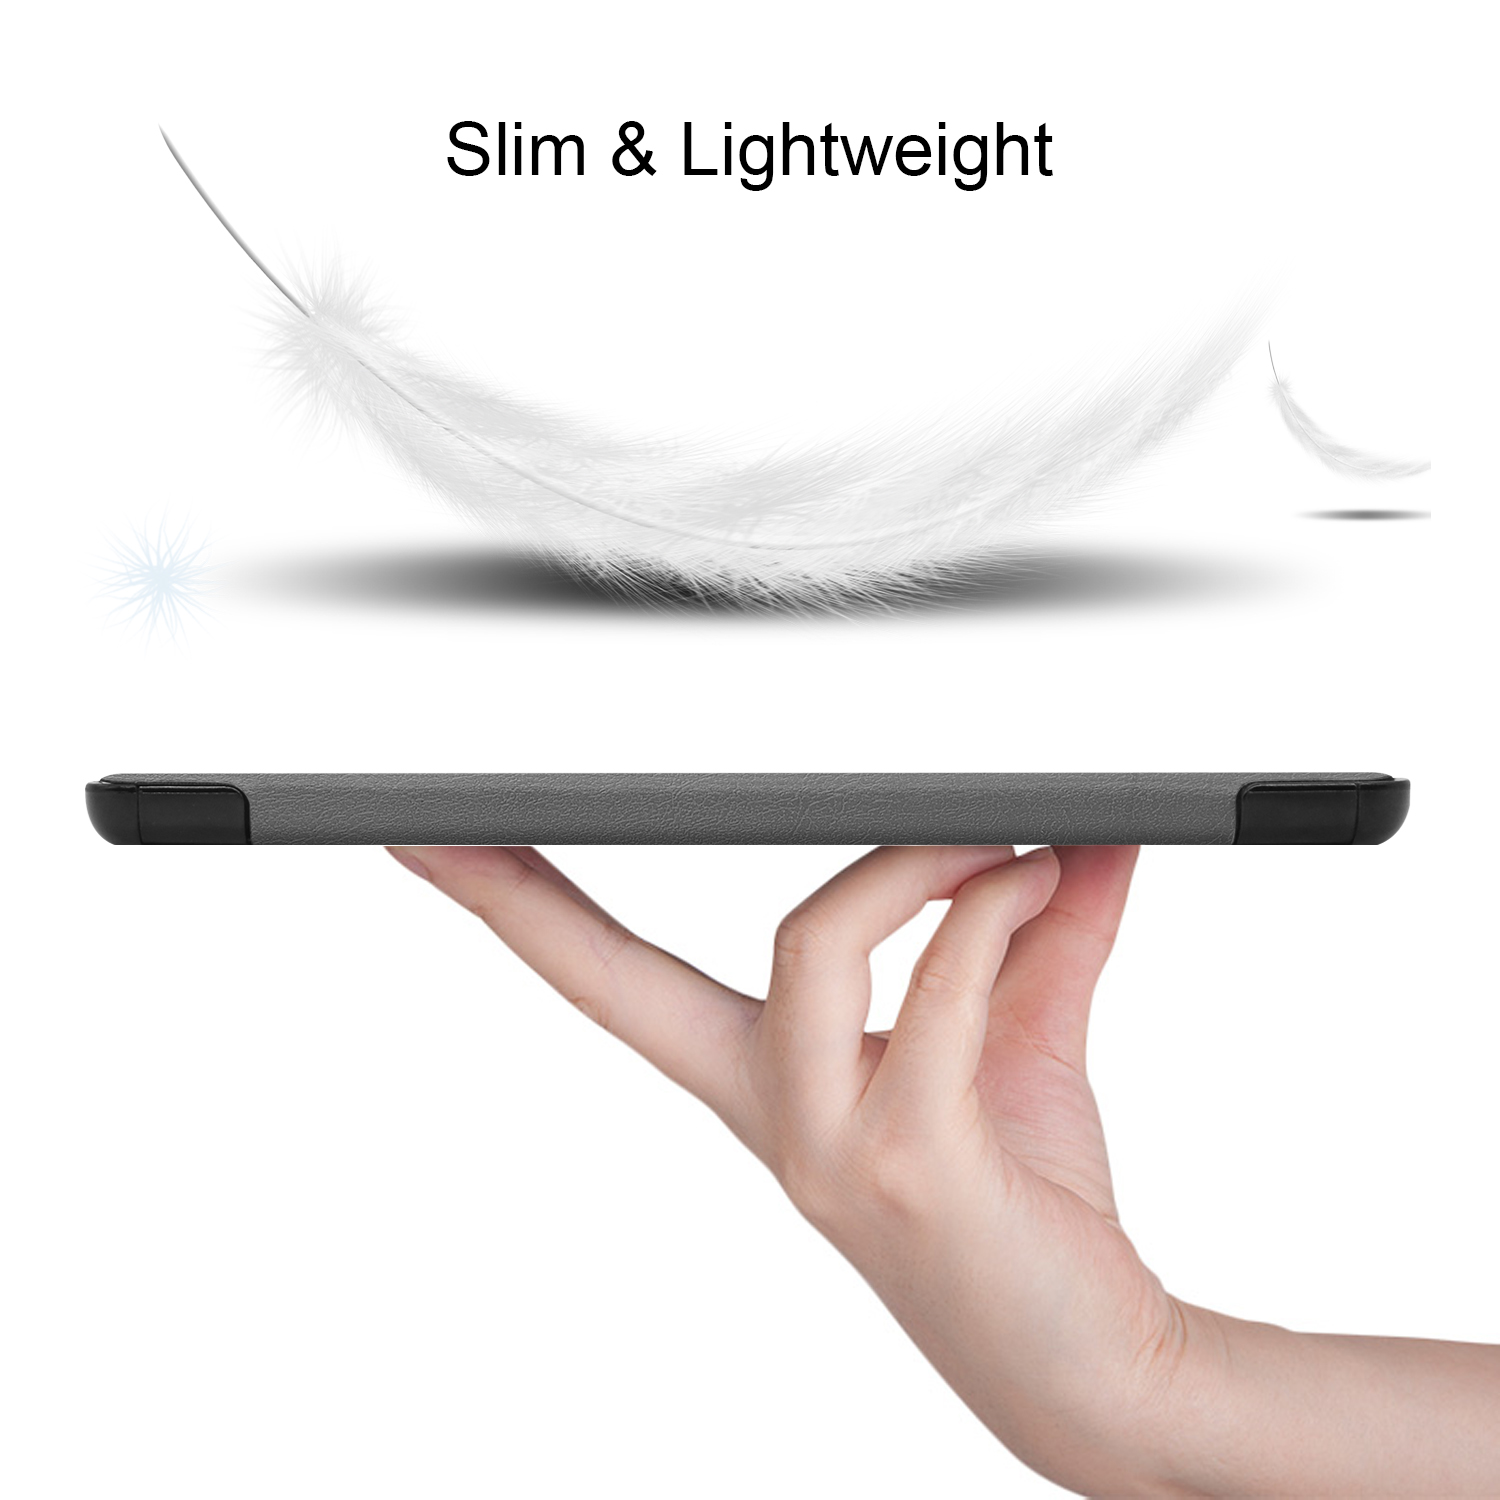 Samsung LOBWERK SM-T500 Bookcover T505 Schutzhülle Tab Grau für A7 Hülle Galaxy Kunstleder,